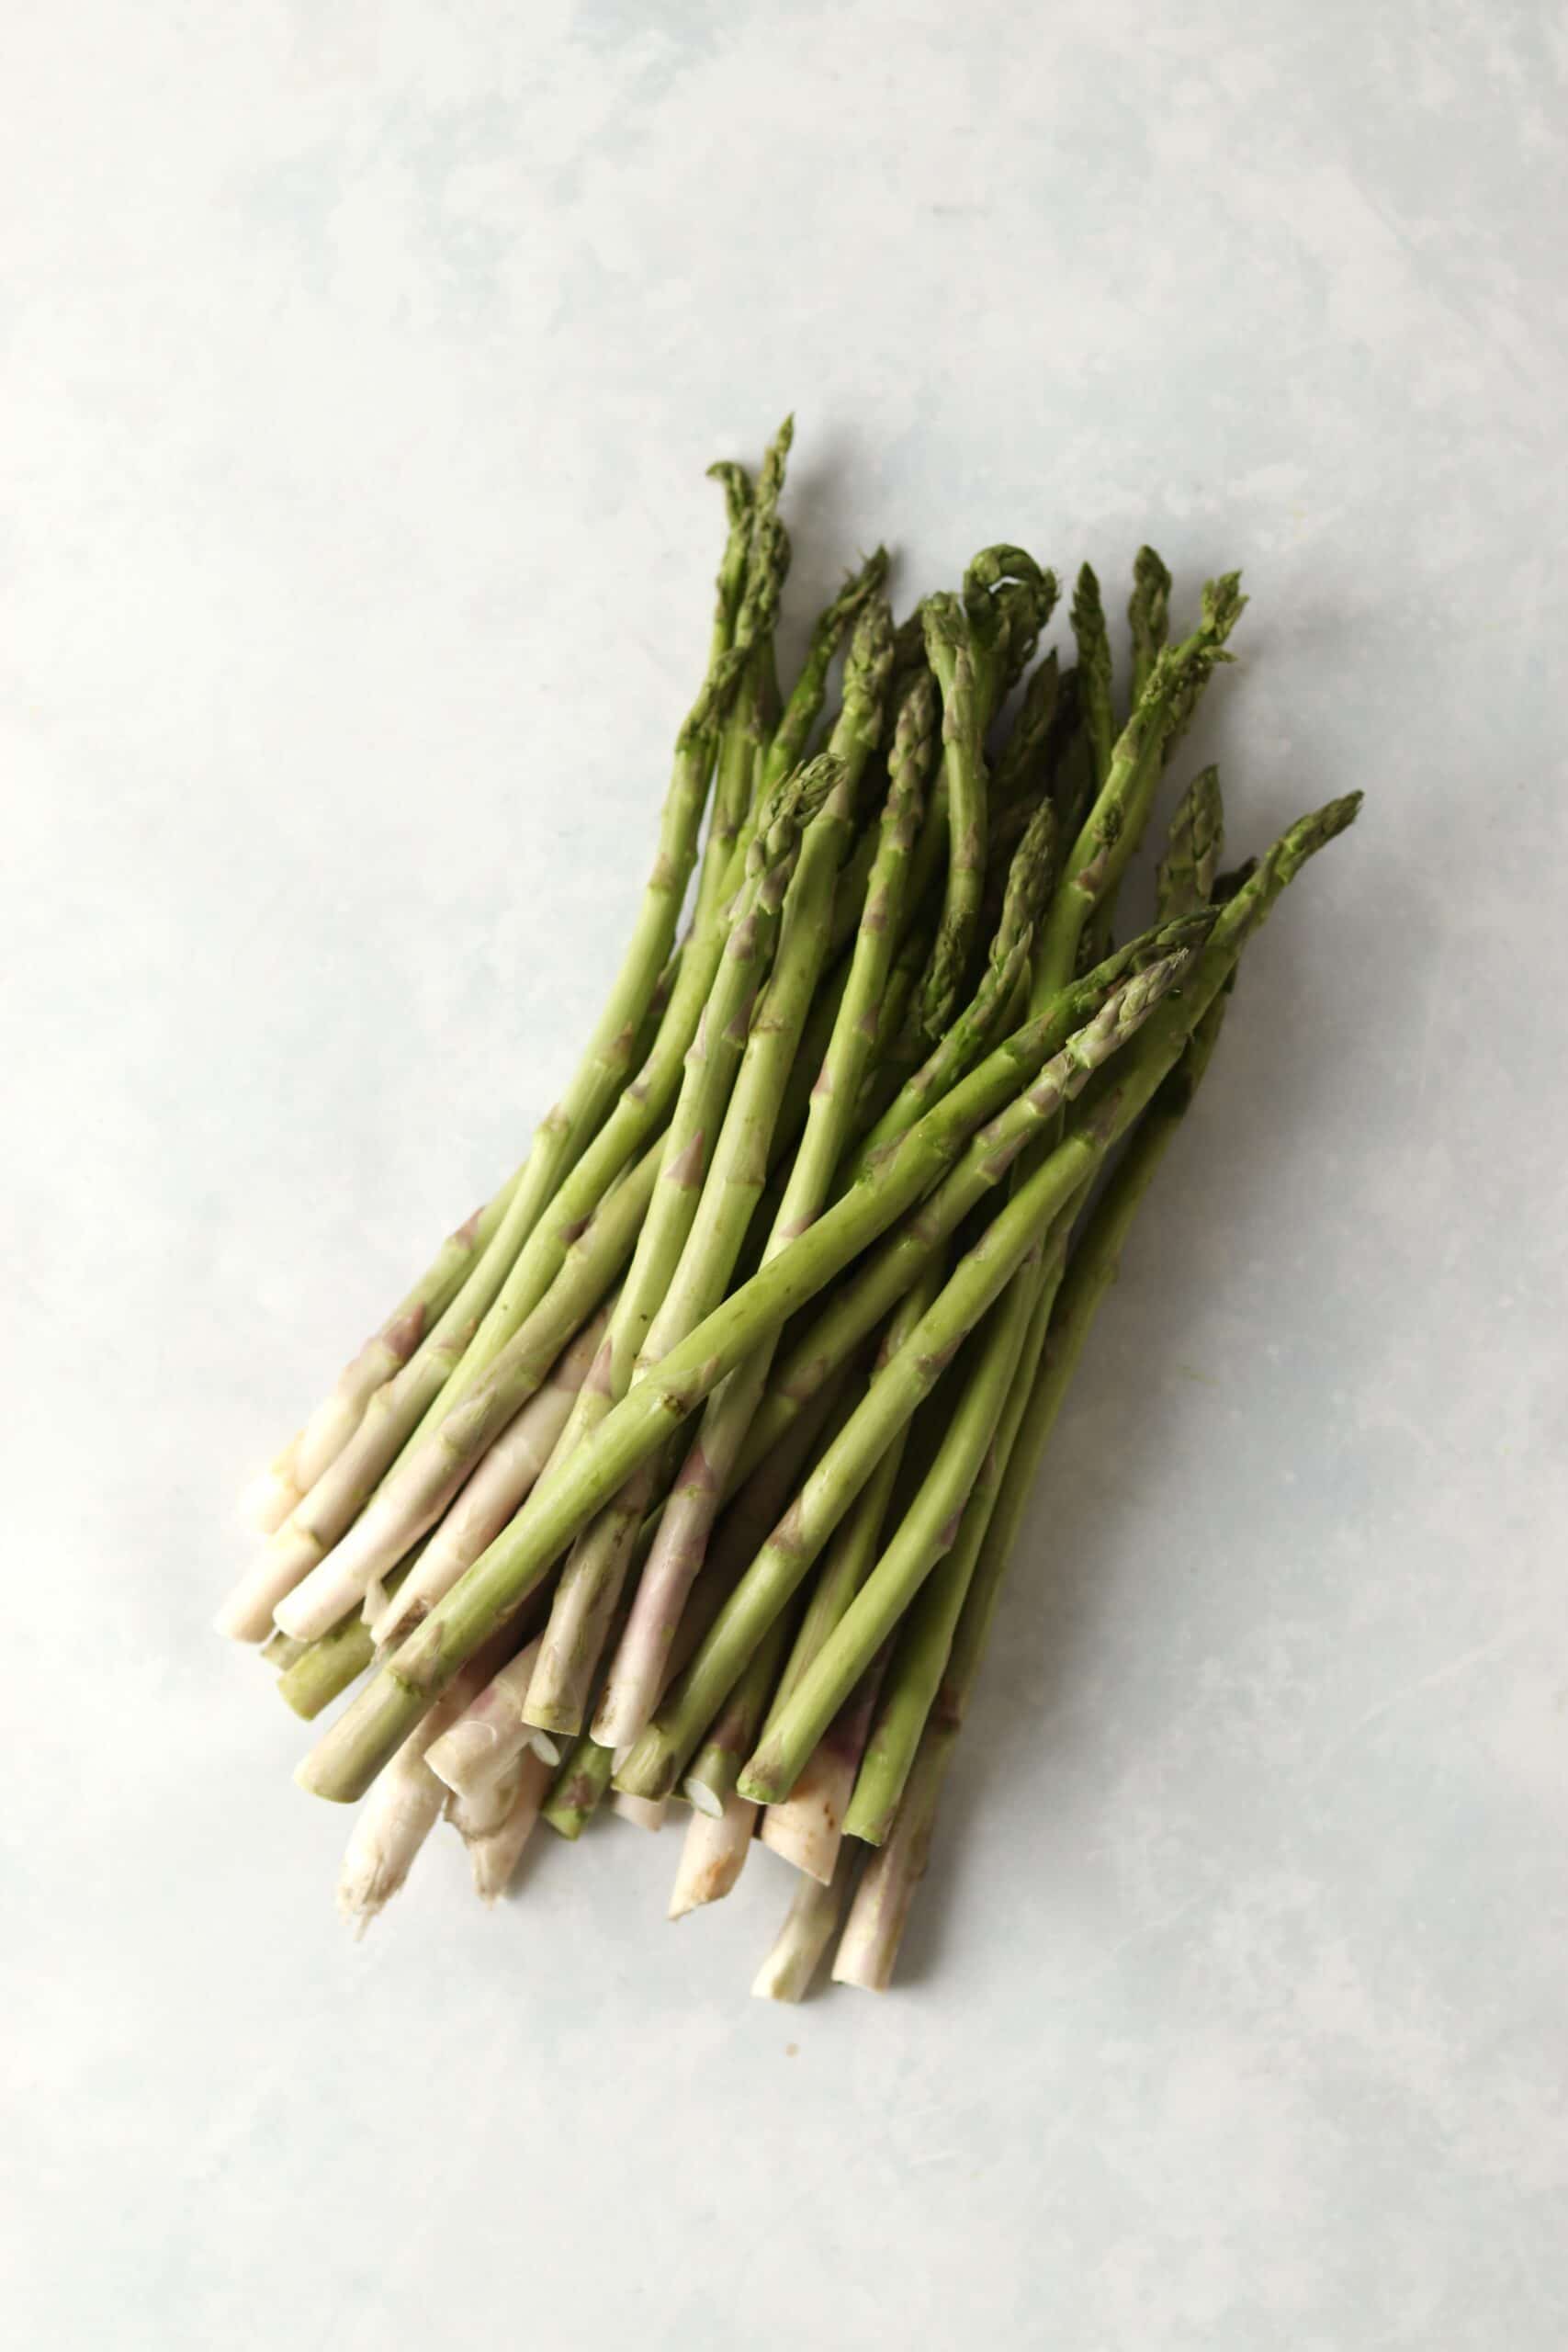 raw asparagus spears